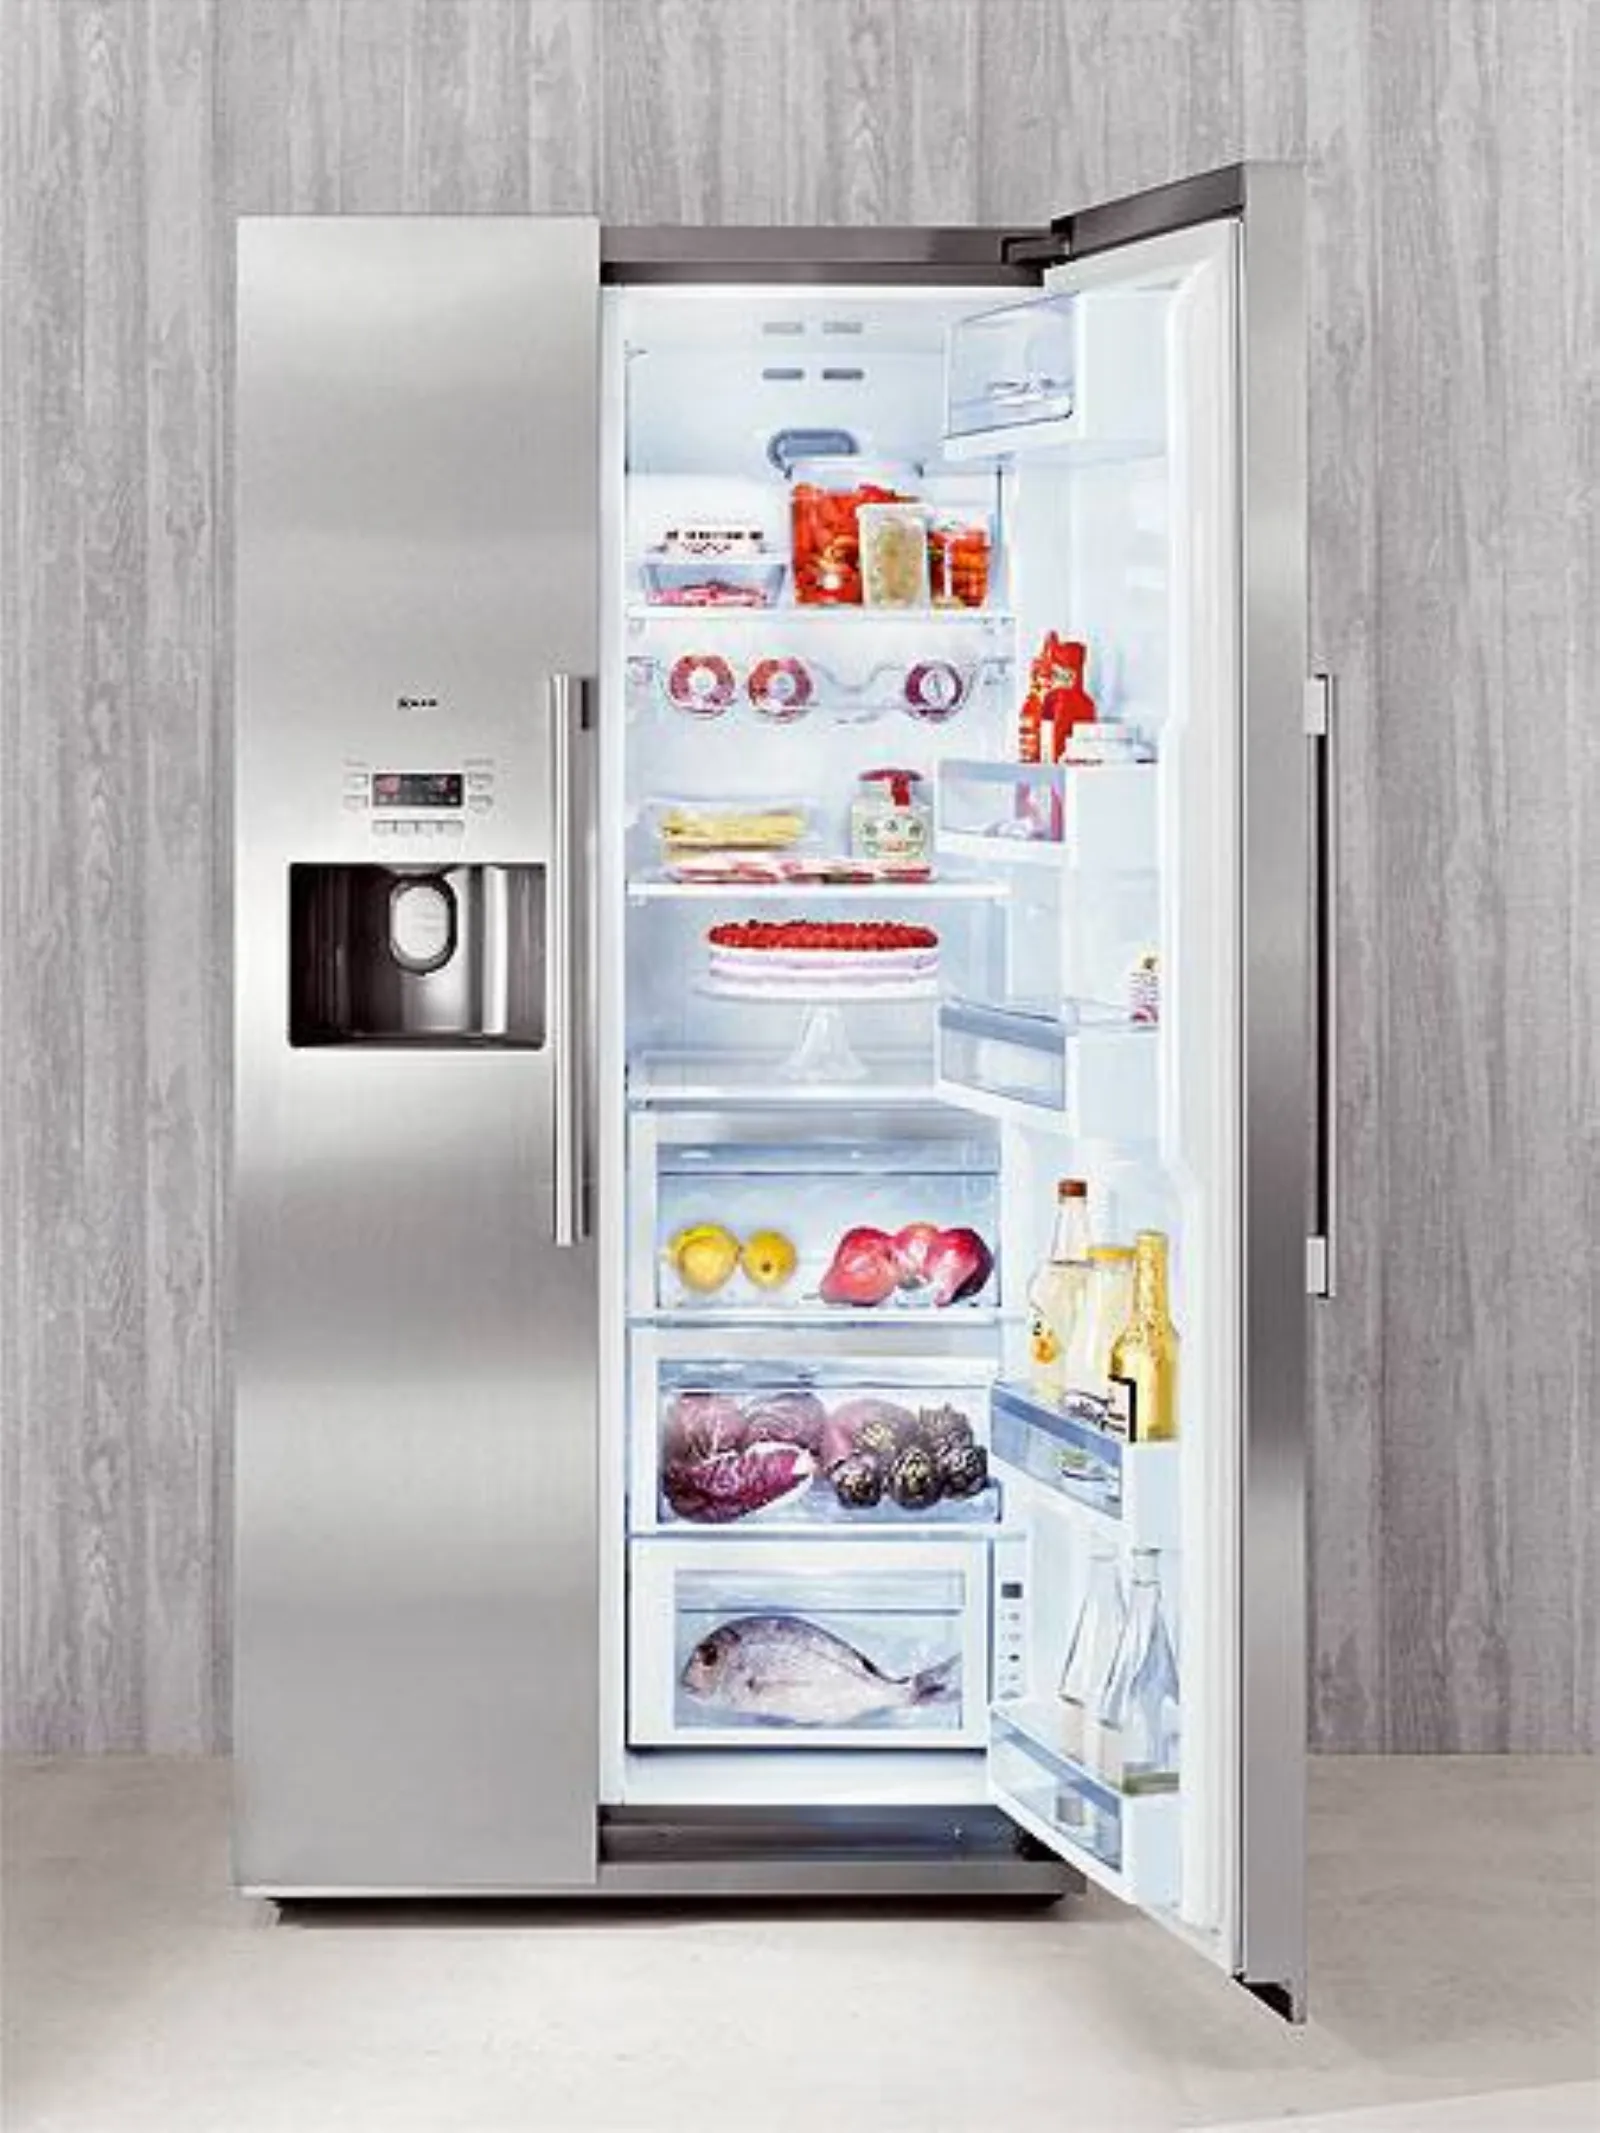 Le funzioni più innovative nei frigoriferi moderni